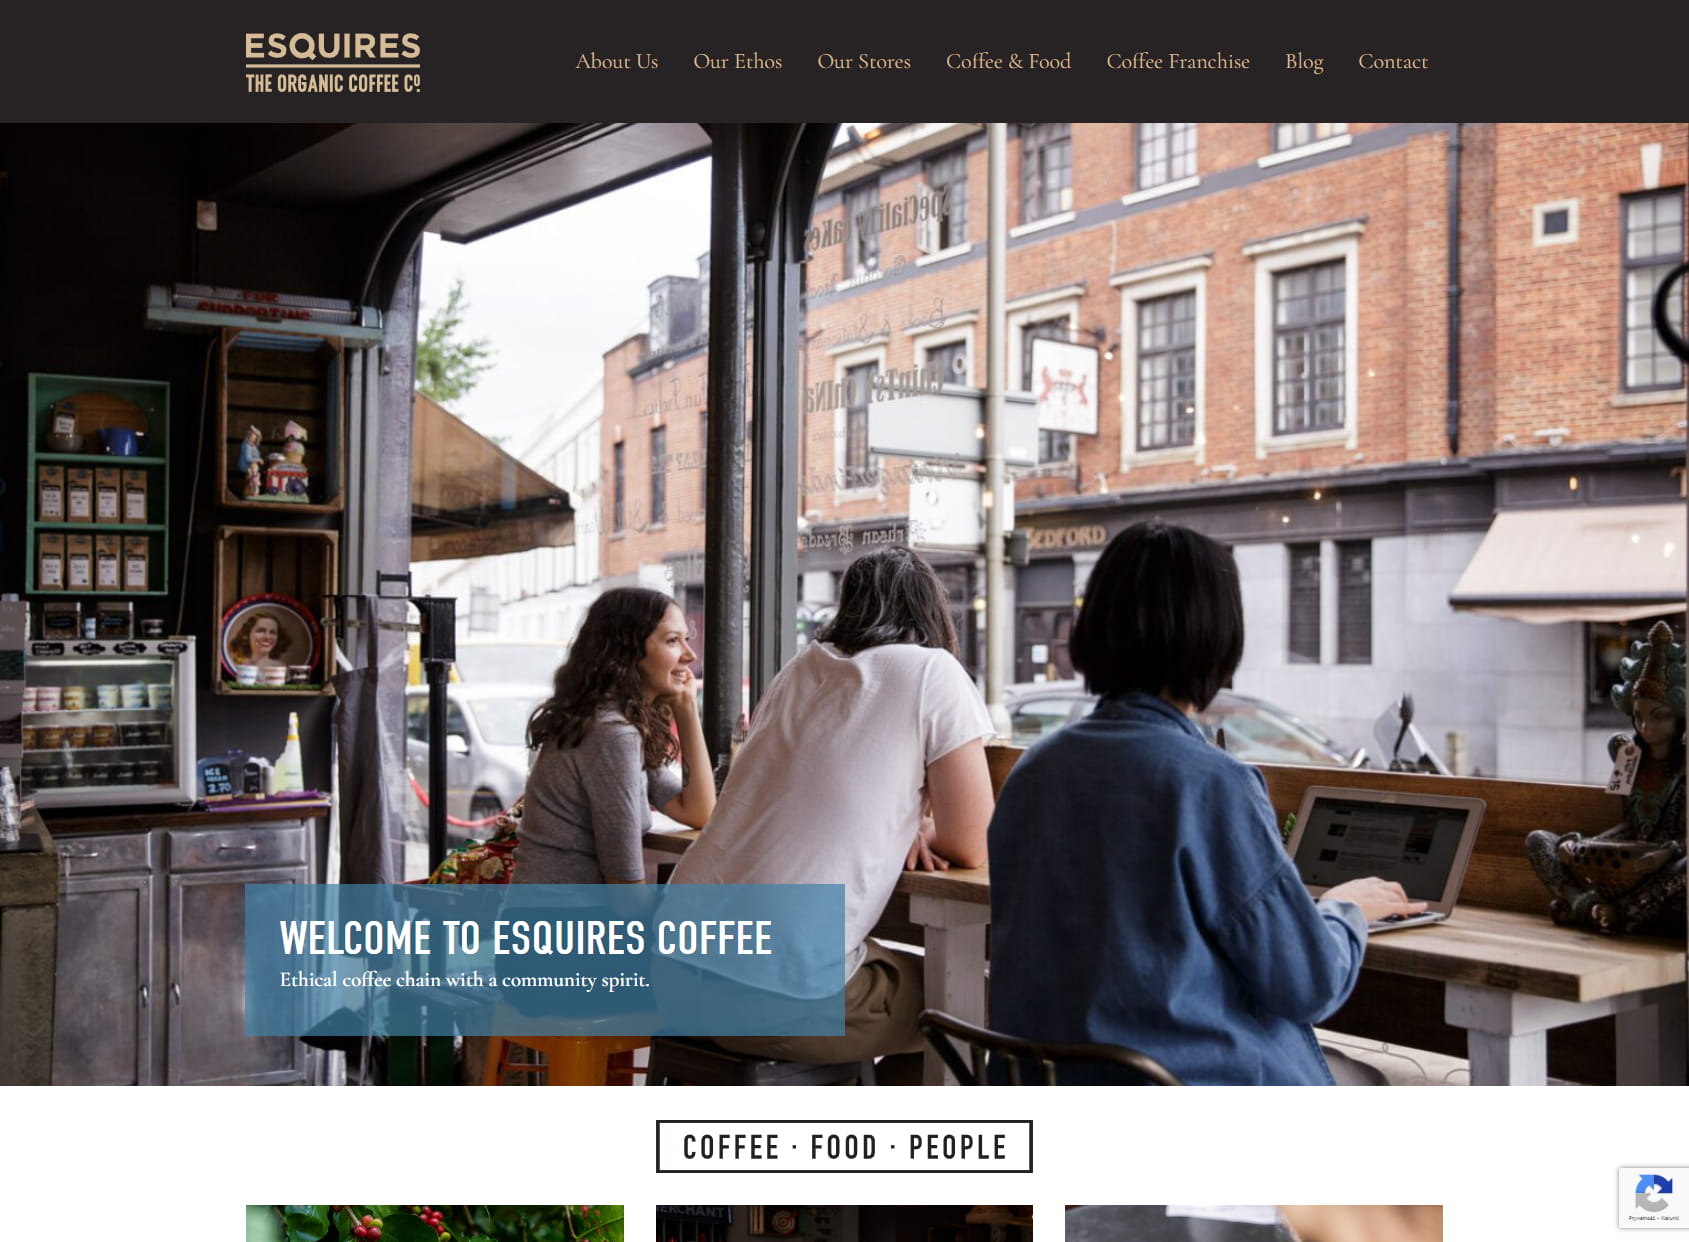 Esquires Coffee Northampton